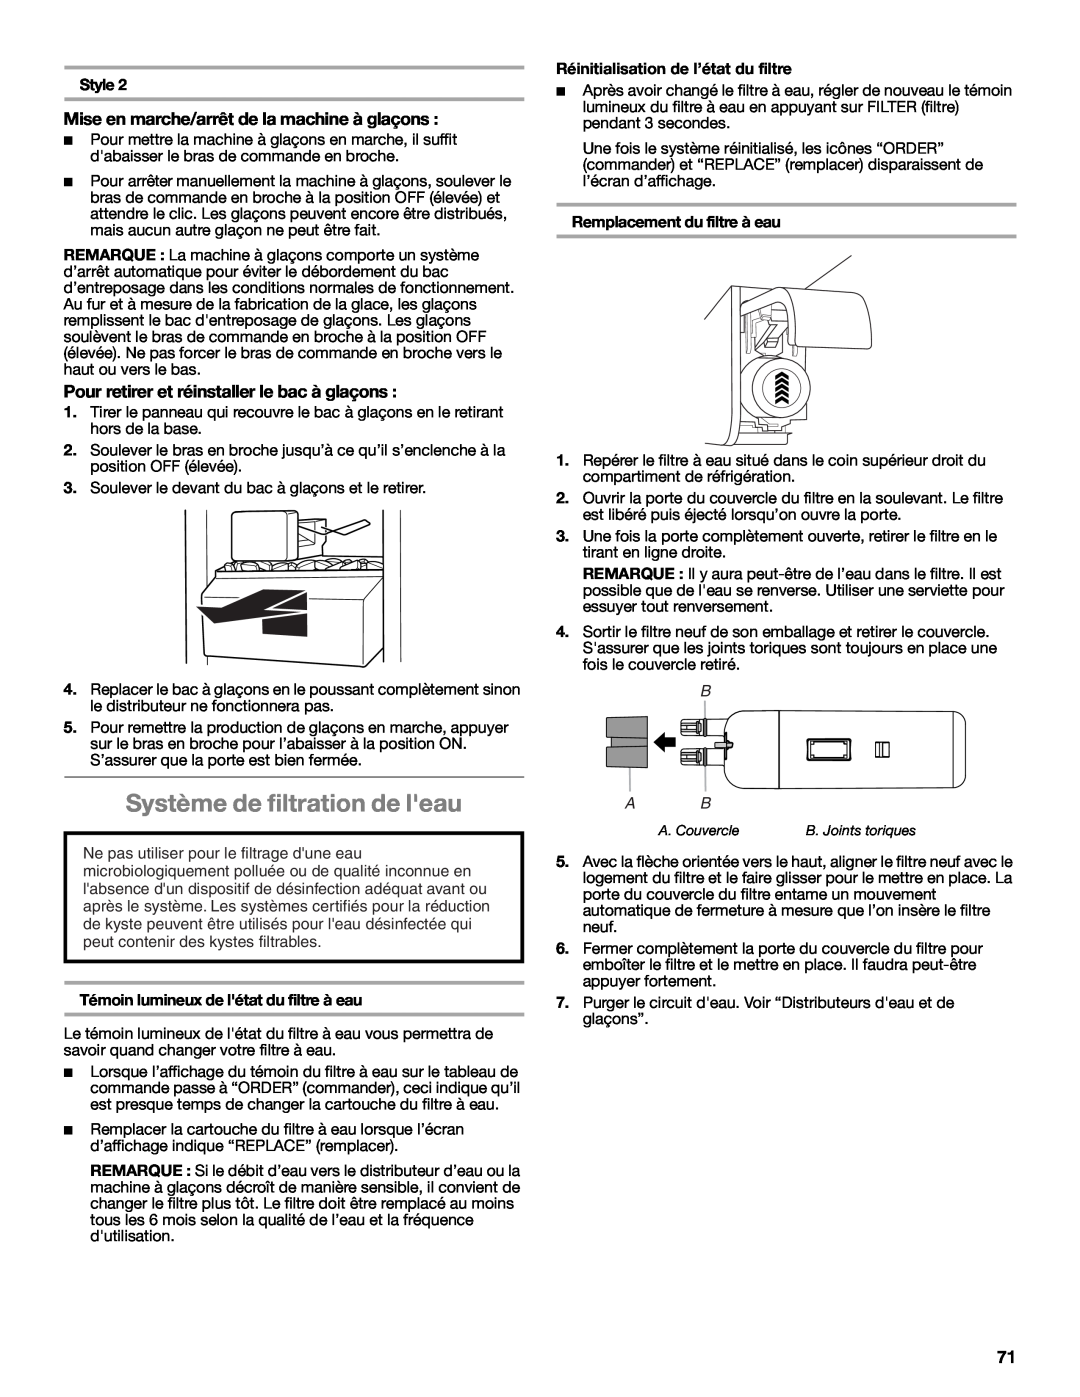 Whirlpool W10632883A Système de filtration de leau, Mise en marche/arrêt de la machine à glaçons, B A B 